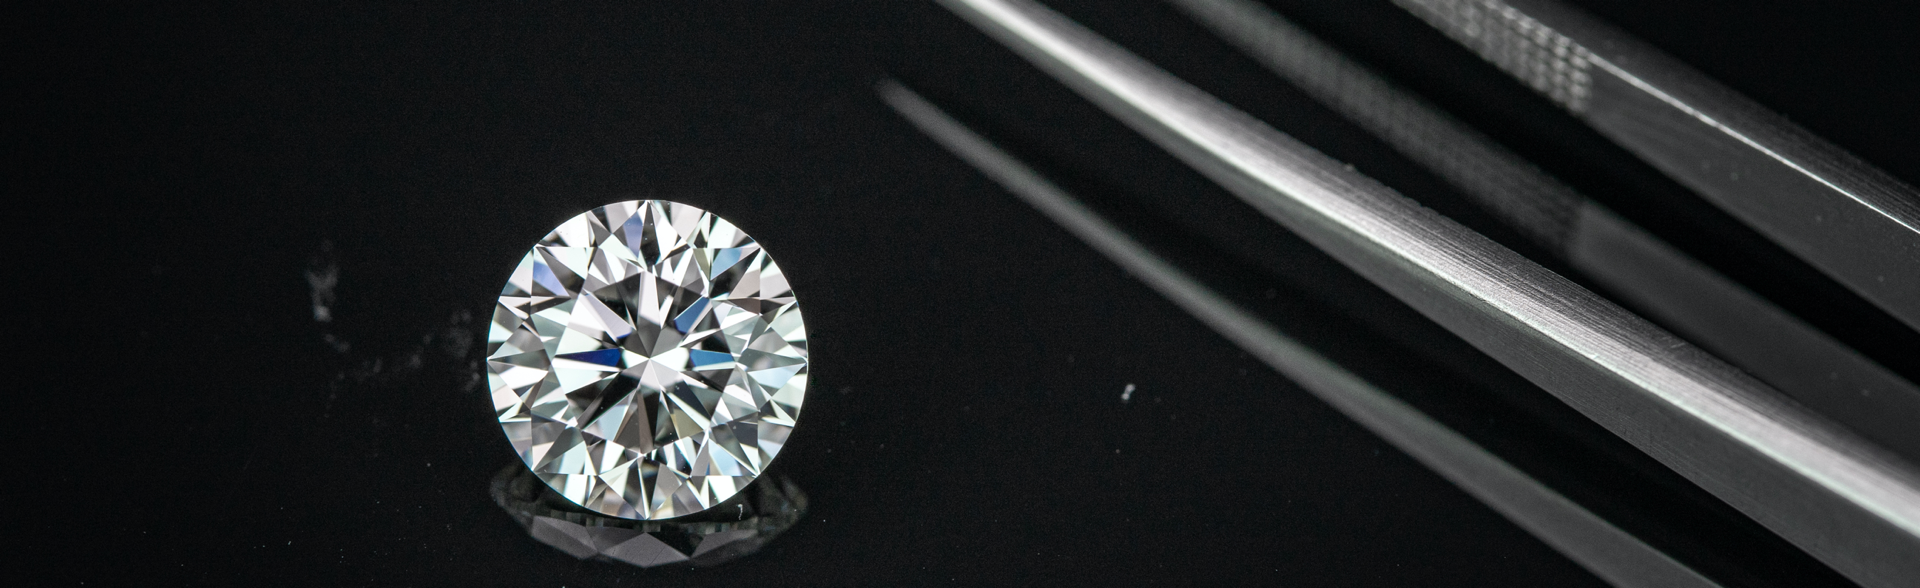 Losse diamanten van hoge kwaliteit met certificaat - IGI -HRD | Antwerpdiamonds.direct